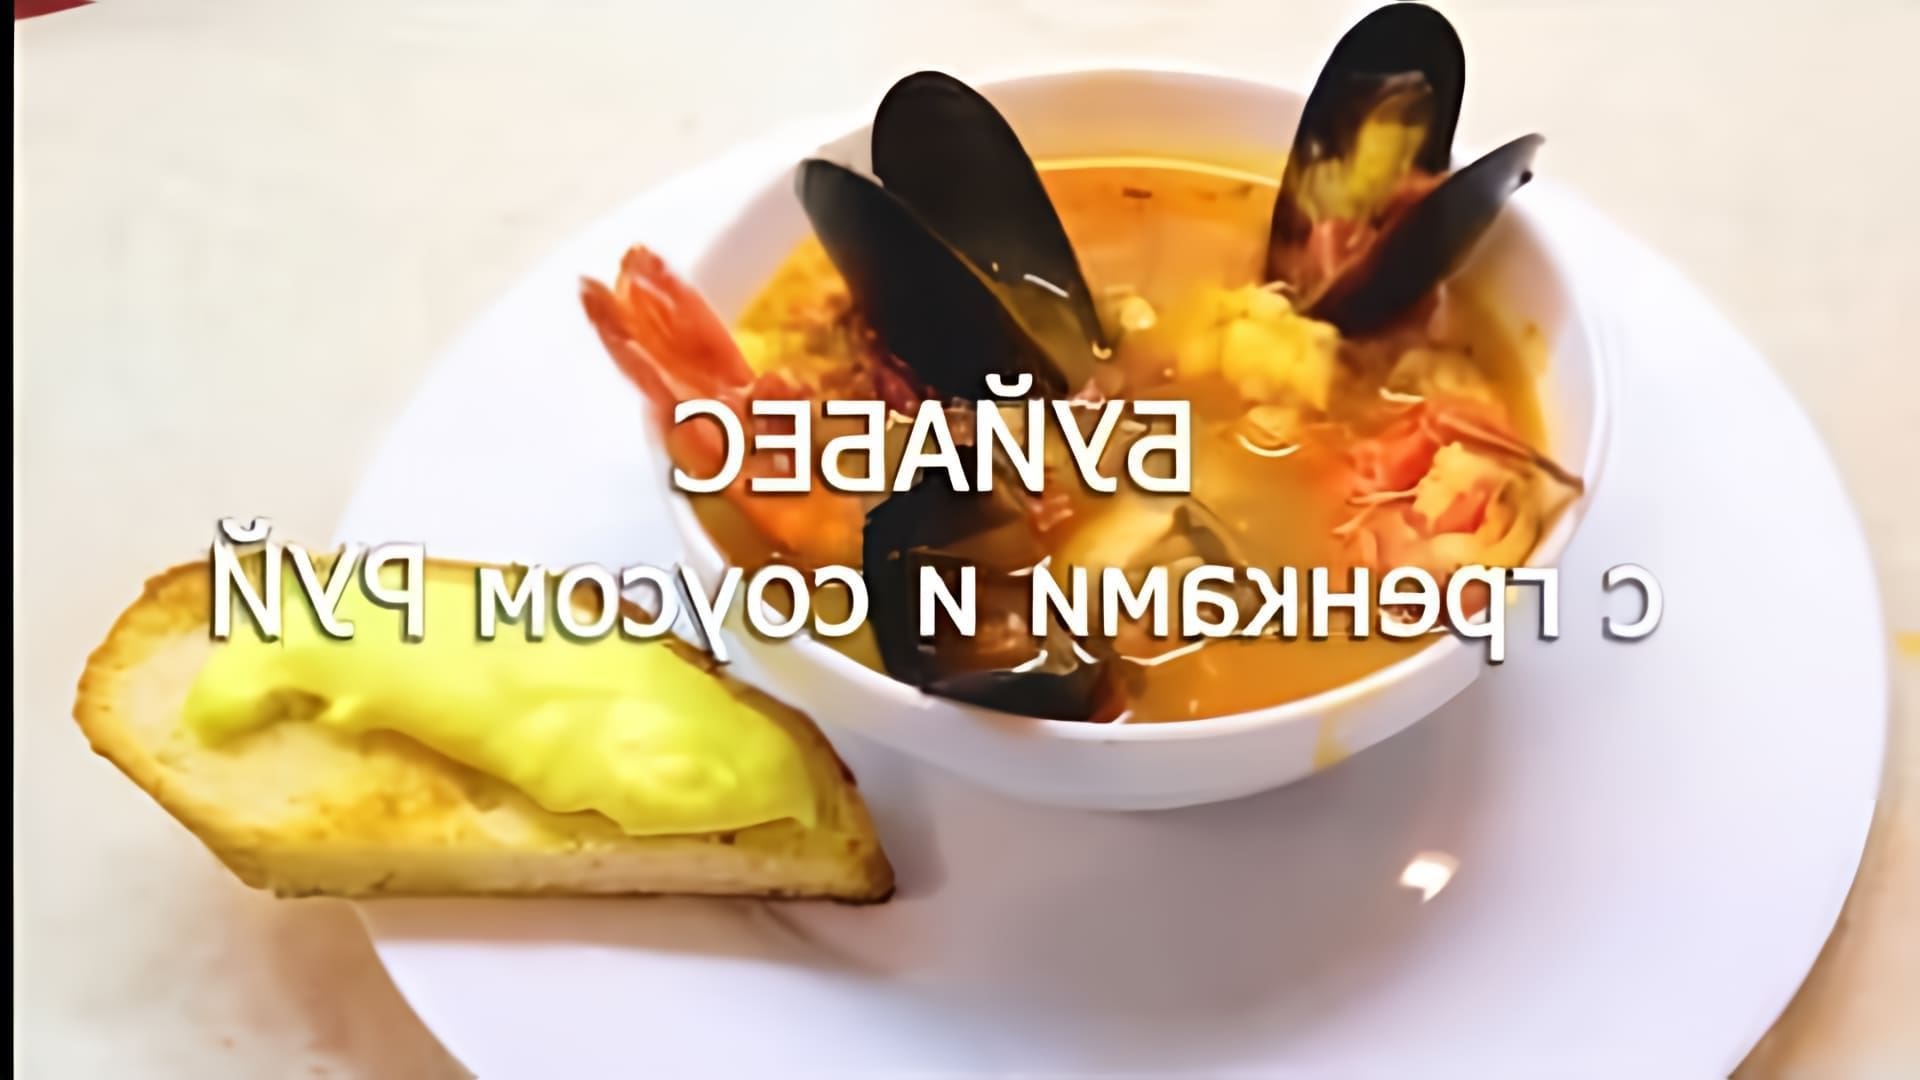 БУЙАБЕС - это очень вкусный и несложный в приготовлении ресторанный французский суп